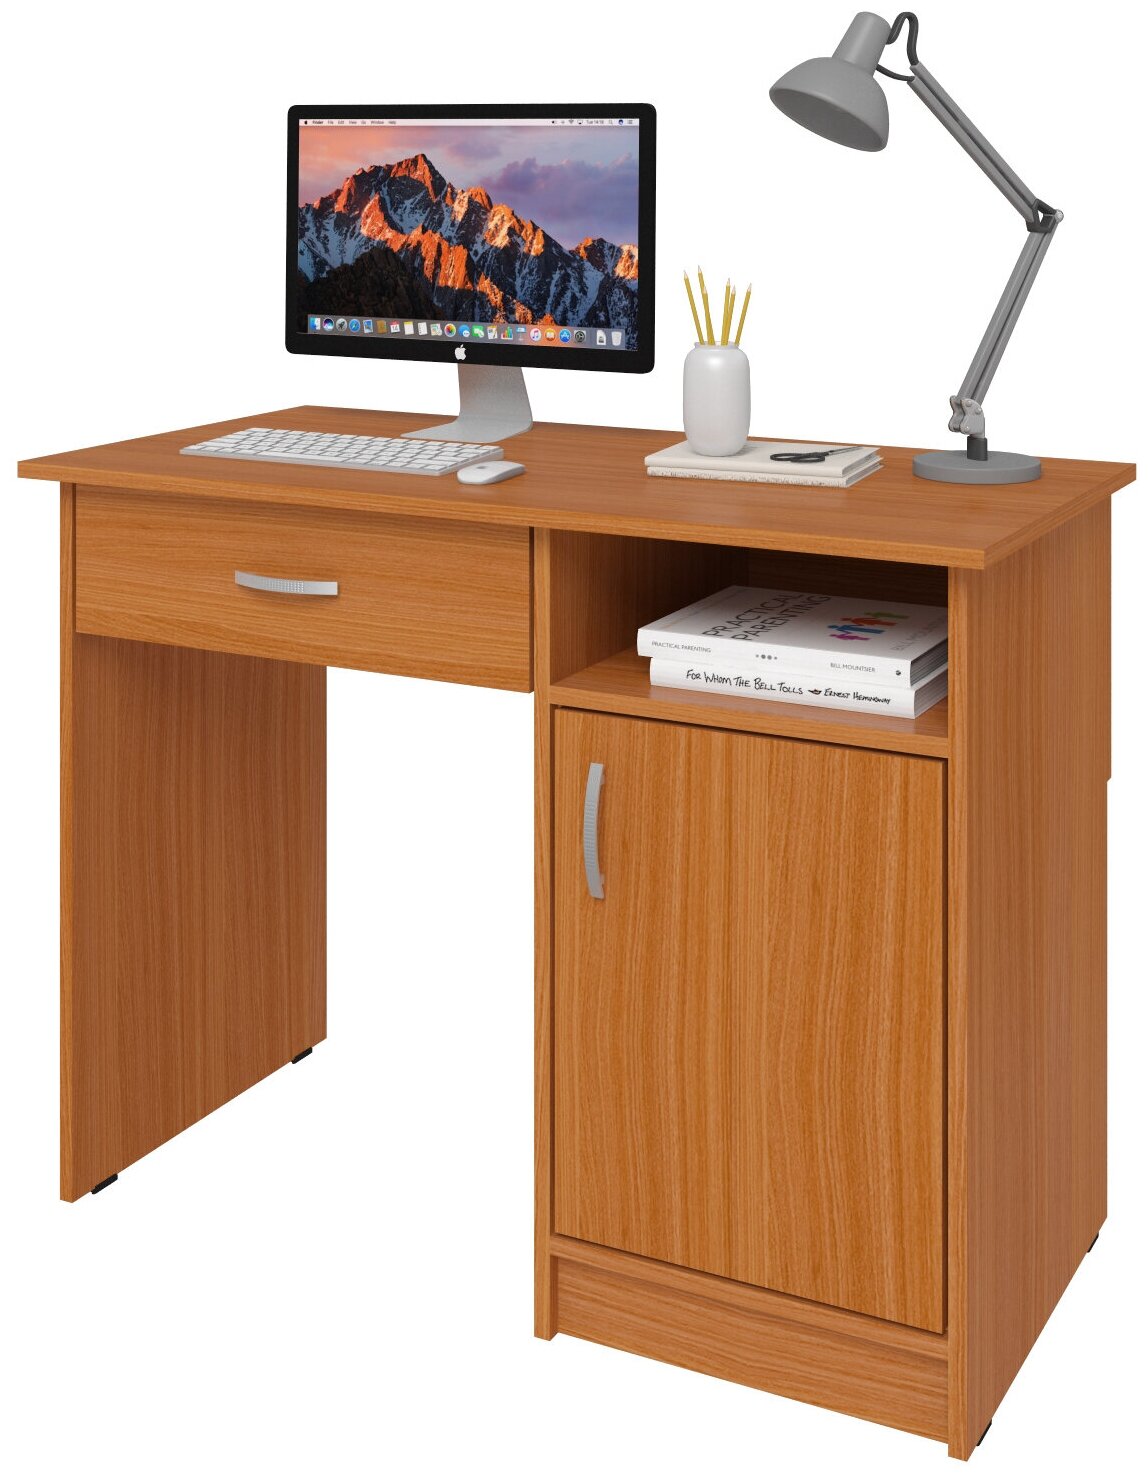 Письменный стол СитиМебель-6/8, с тумбой и дополнительным ящиком под столешницей, ШхГхВ: 100х50х75 см, цвет: вишня оксфорд